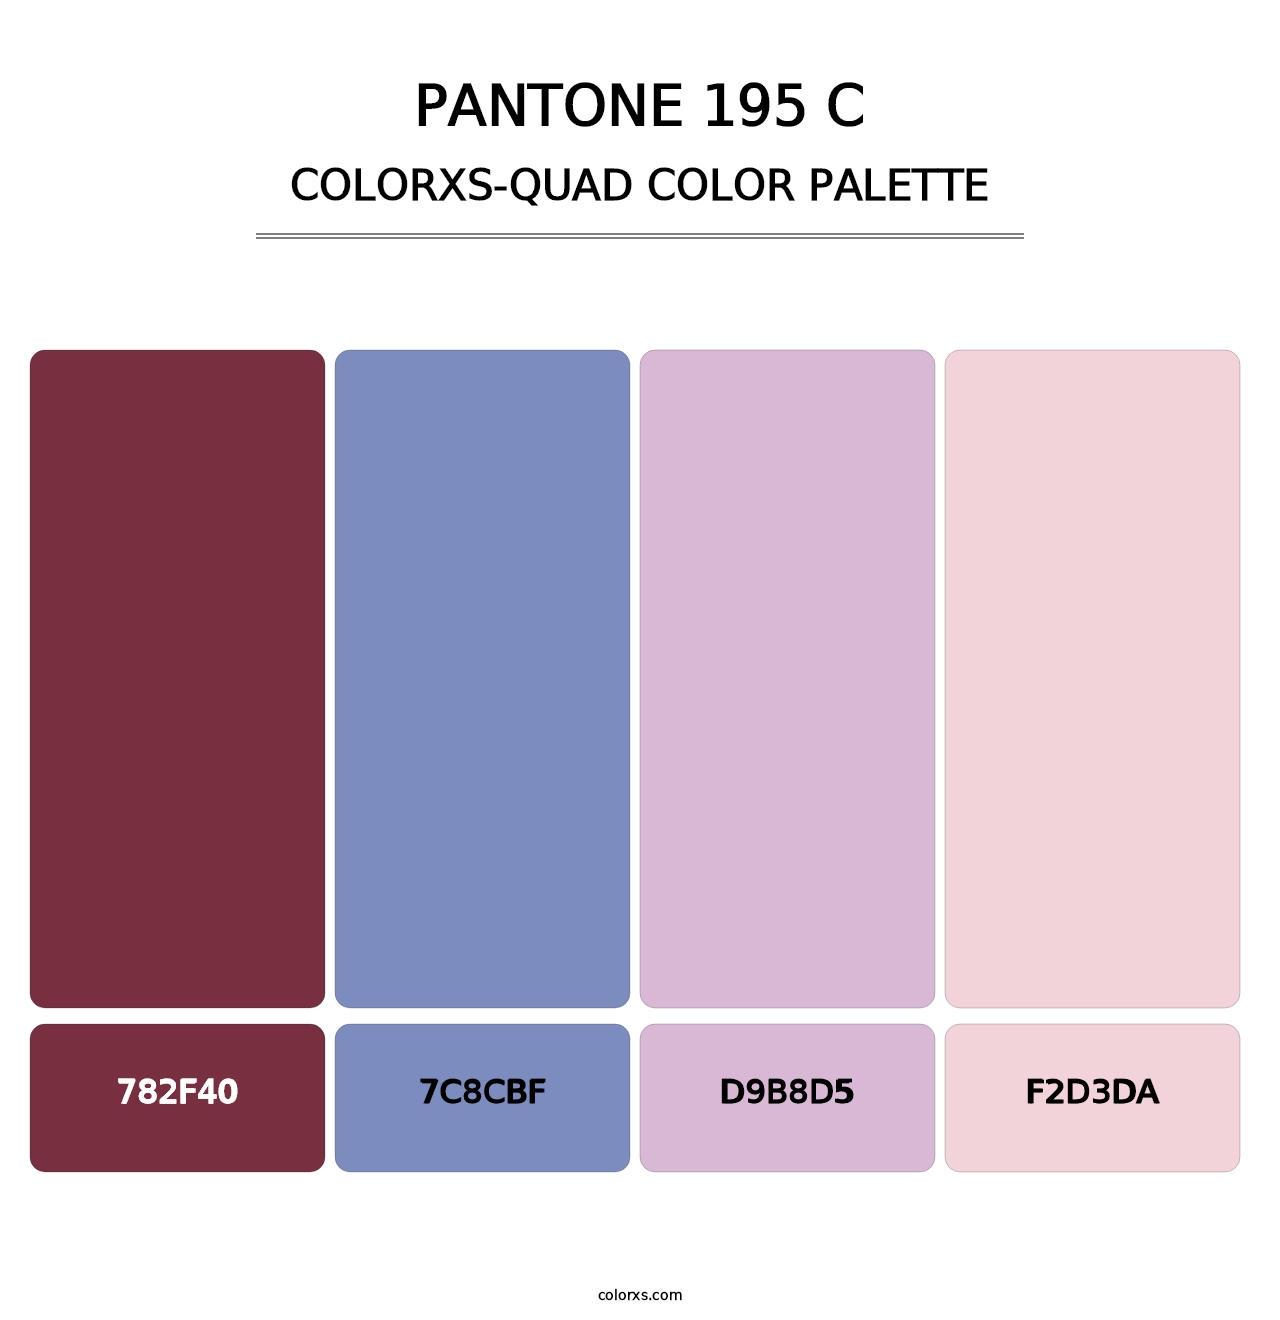 PANTONE 195 C - Colorxs Quad Palette